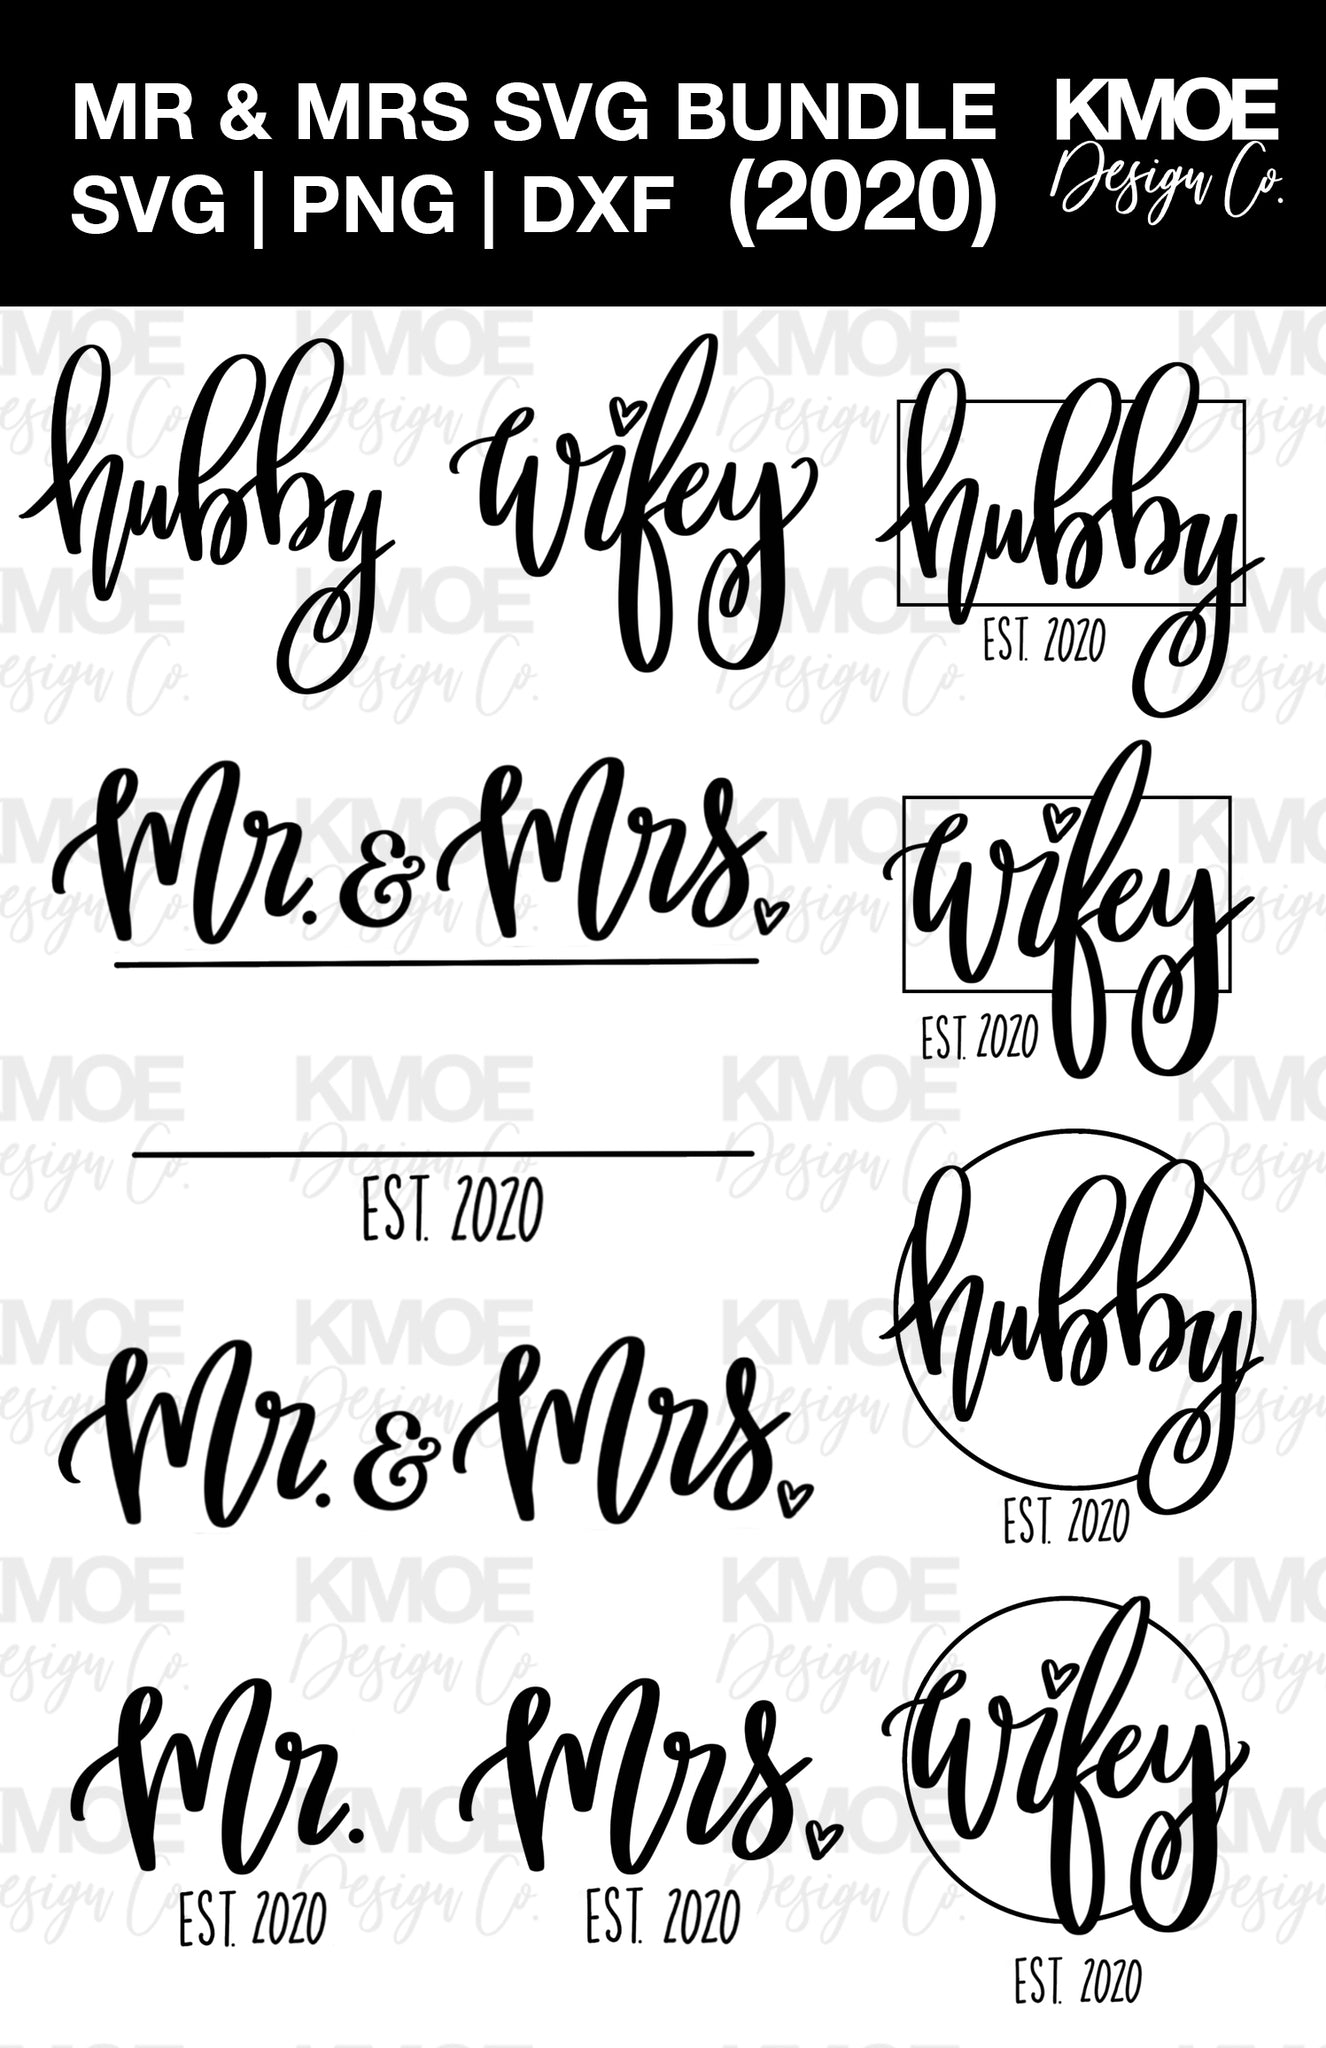 Download Mr Mrs 2020 Svg Mr Mrs Svg Bundle Hubby Wifey Svg Monogram Svg Kmoe Design Co